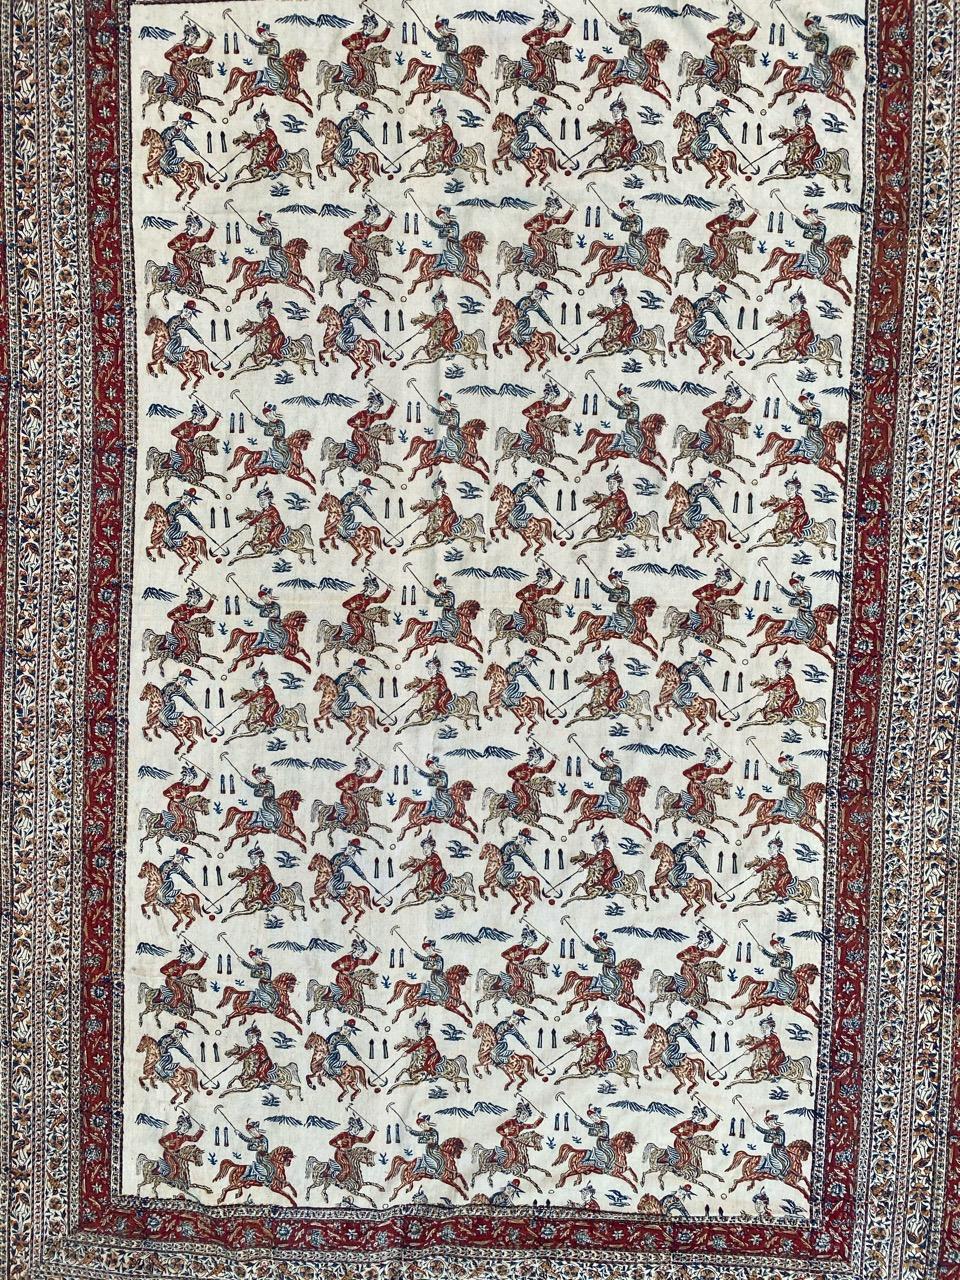 Schöne Mitte des Jahrhunderts handbemalte Kalamkar mit einem schönen Design der Safawiden-Periode und schönen Farben, handbemalt auf Baumwolle Grundlage.